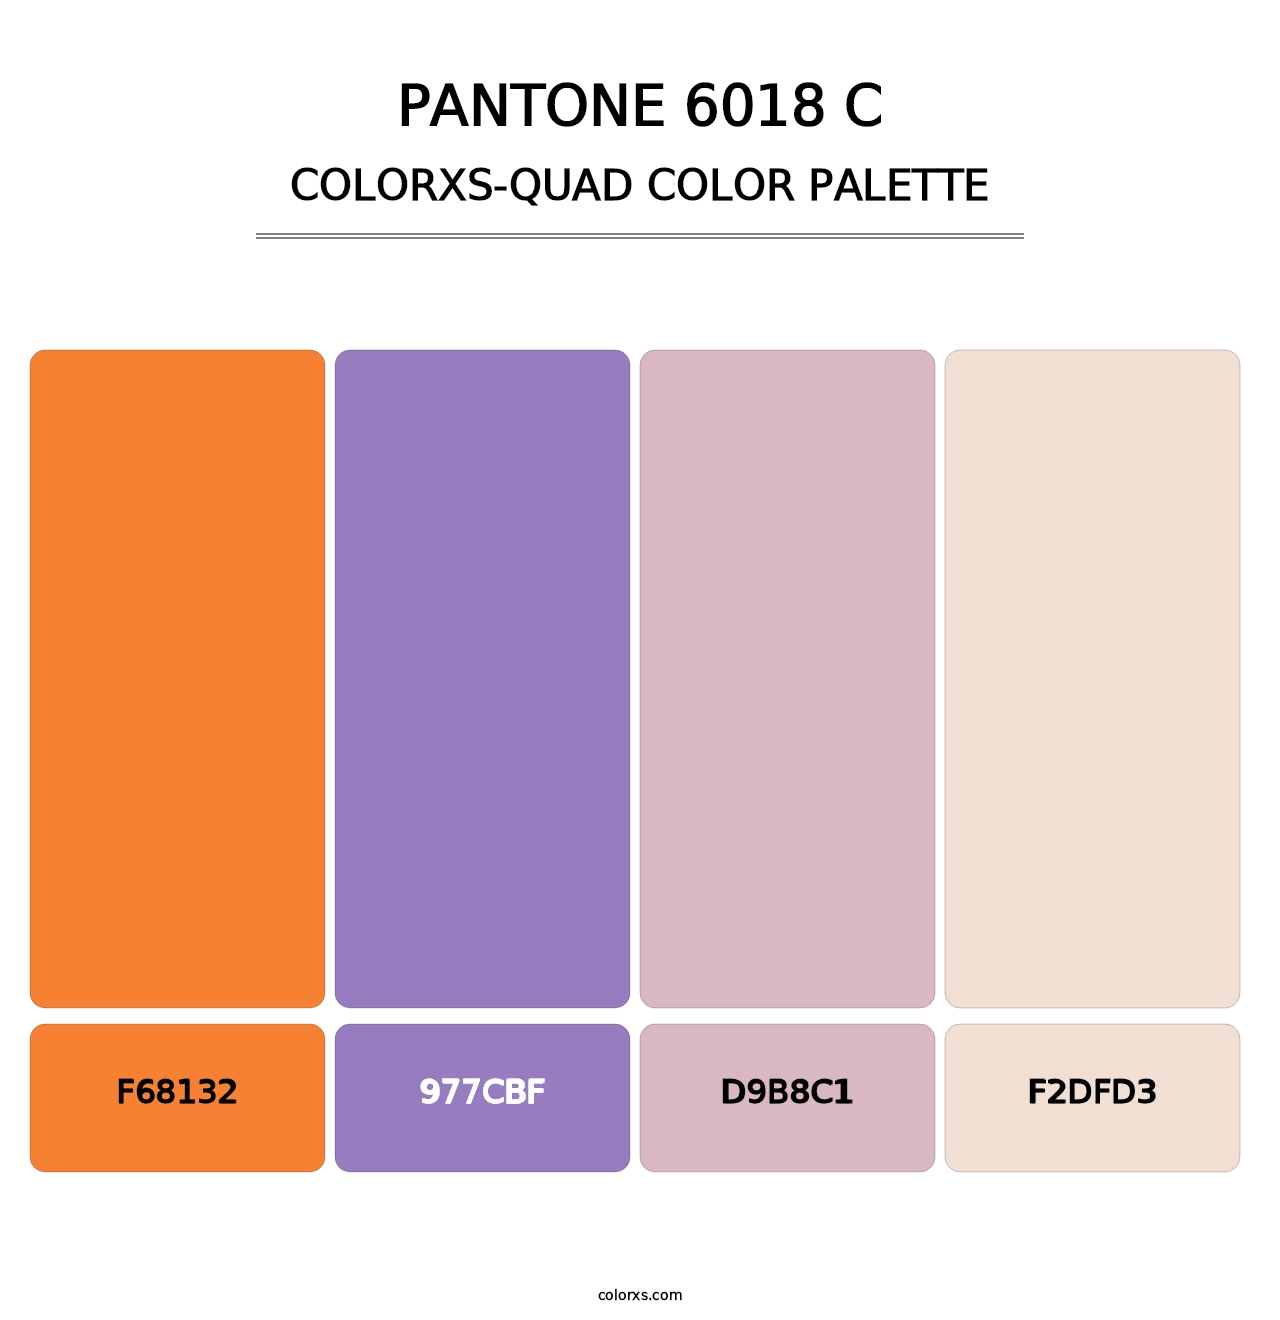 PANTONE 6018 C - Colorxs Quad Palette